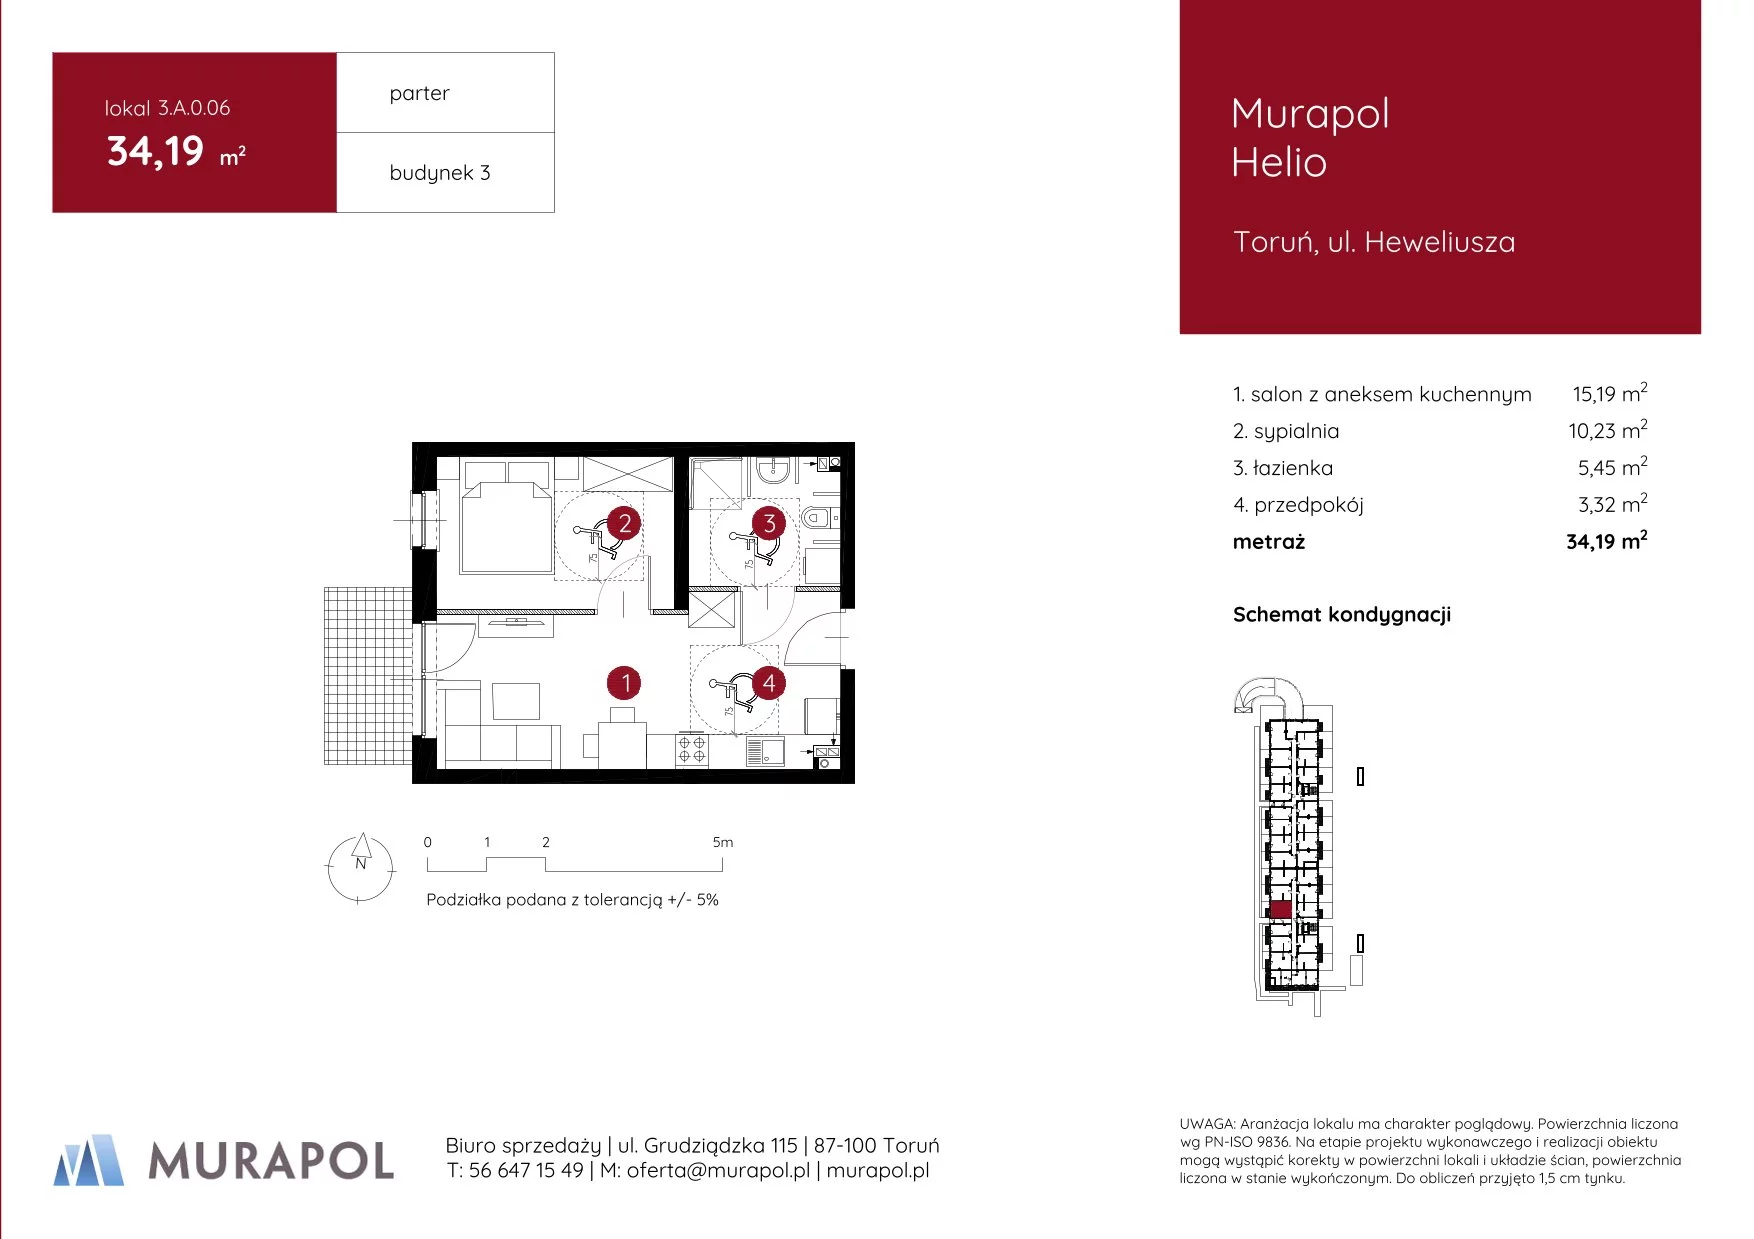 Mieszkanie 34,19 m², parter, oferta nr 3.A.0.06, Murapol Helio, Toruń, Wrzosy, JAR, ul. Heweliusza